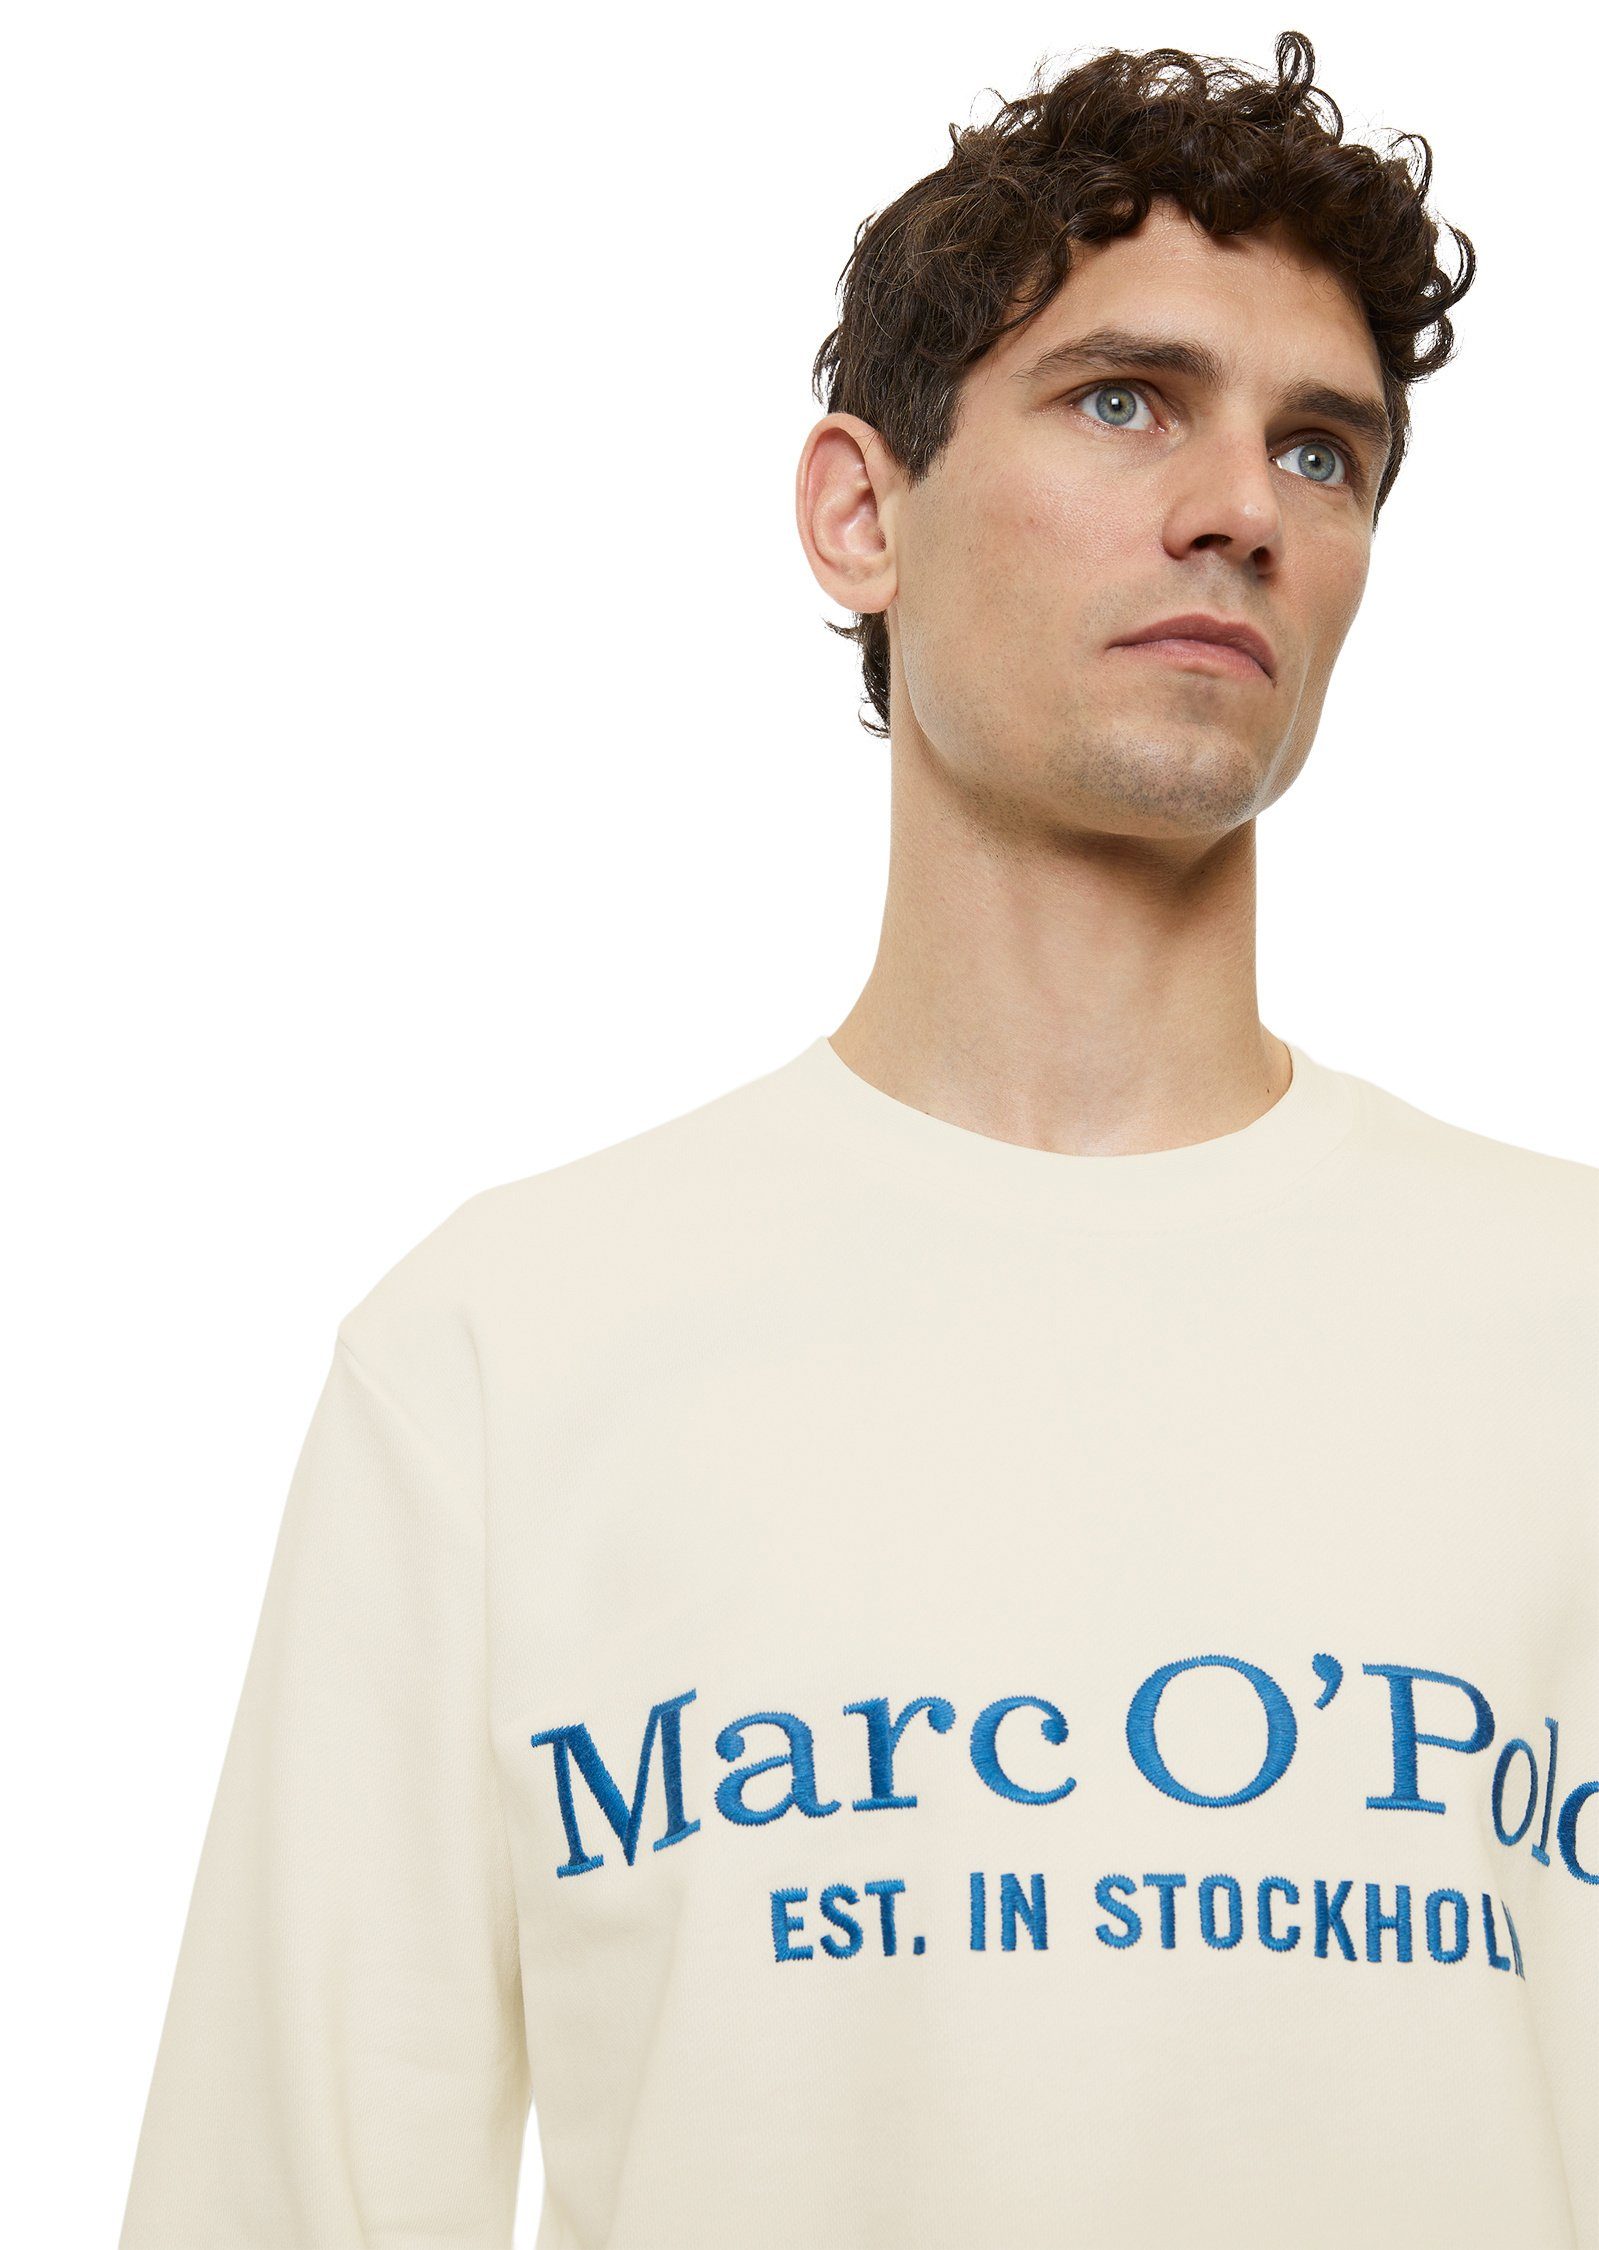 Bio-Baumwolle aus reiner Sweatshirt Marc O'Polo weiß